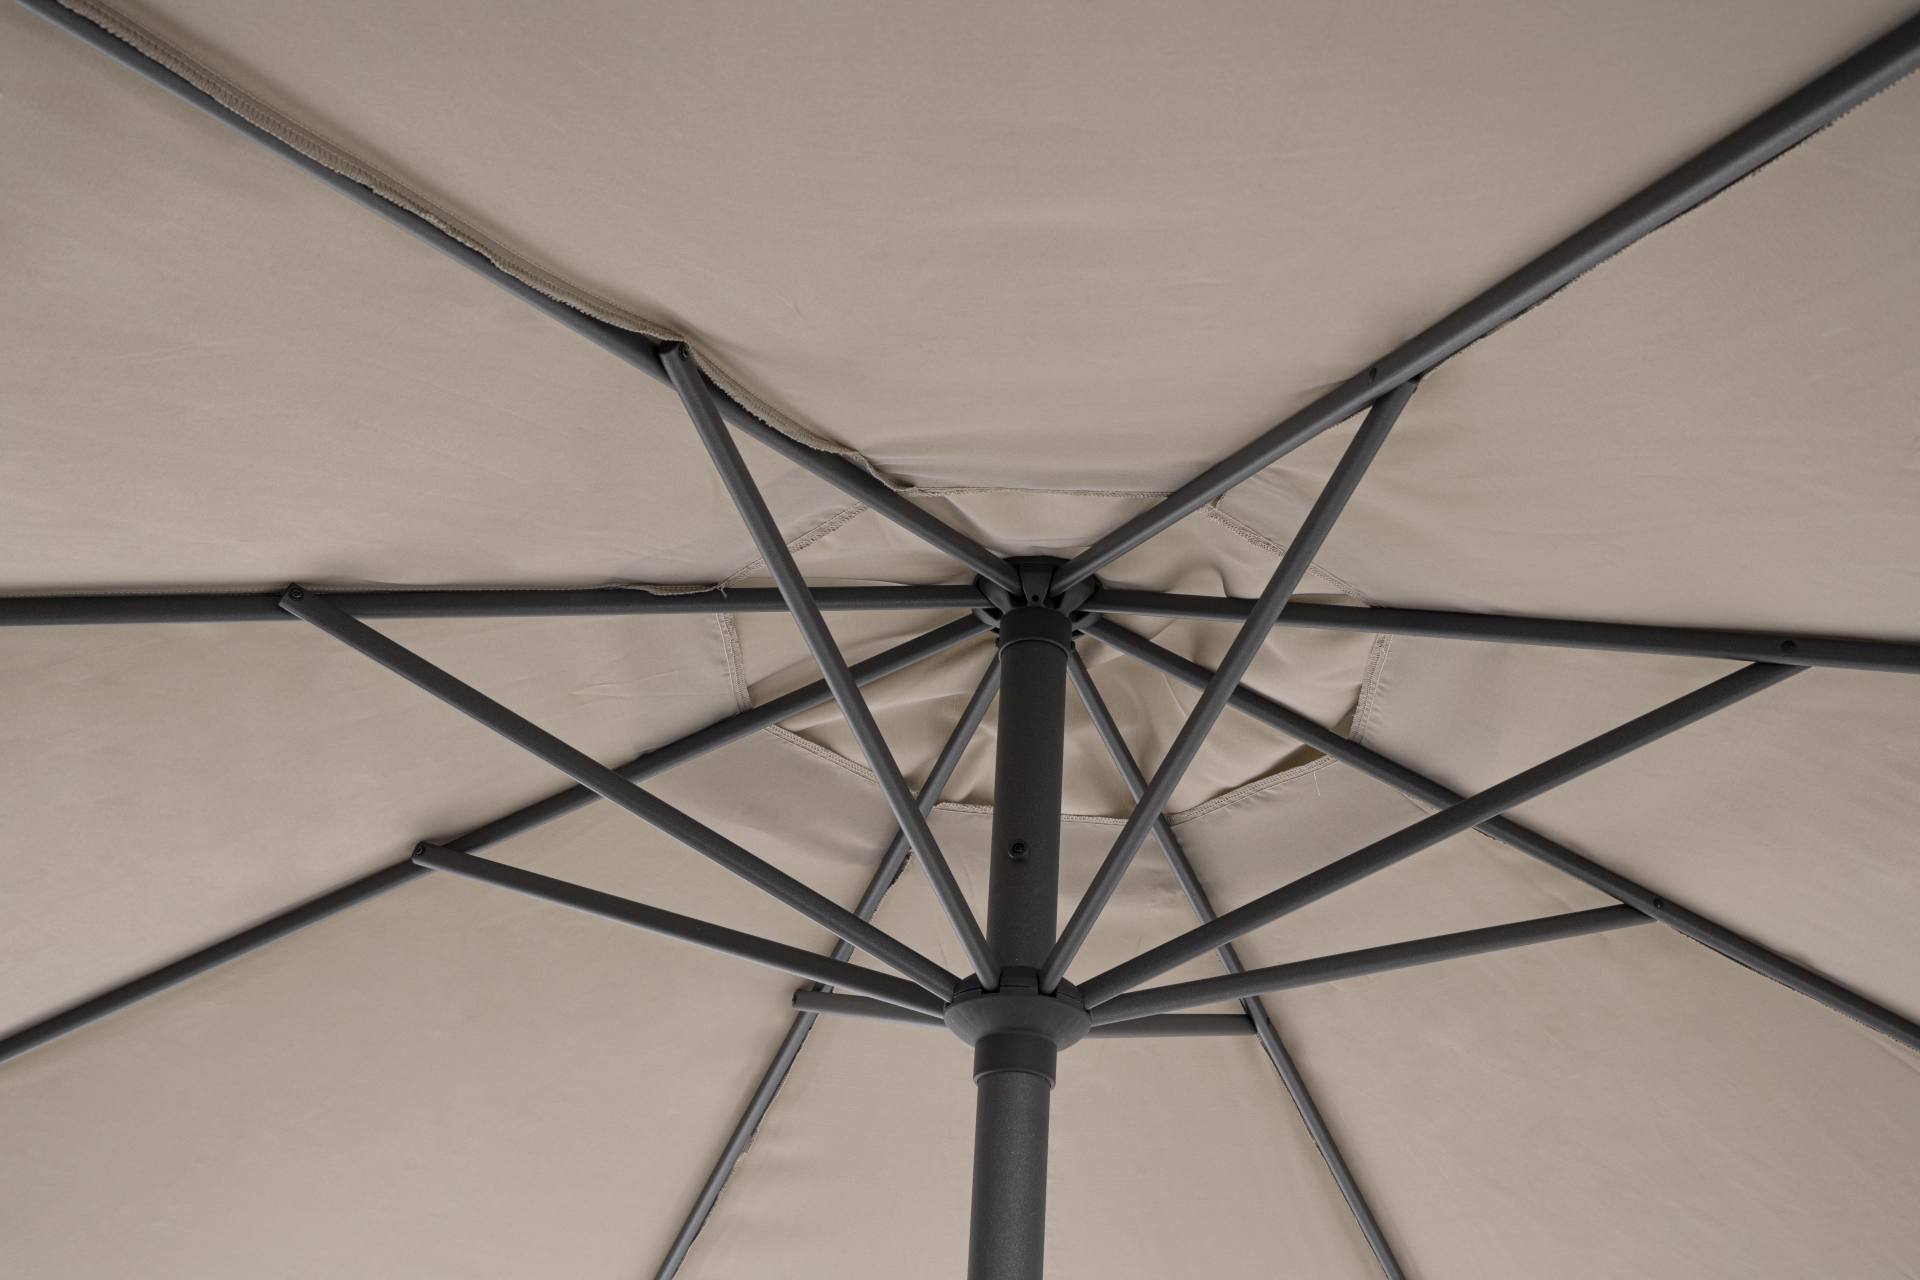 Der Sonnenschirm Rio überzeugt mit seinem klassischen Design. Gefertigt wurde er aus einer Polyester Plane, welche einen Beigen Farbton besitzt. Das Gestell ist aus Aluminium und hat eine Anthrazit Farbe. Der Sonnenschirm verfügt über einen Durchmesser vo